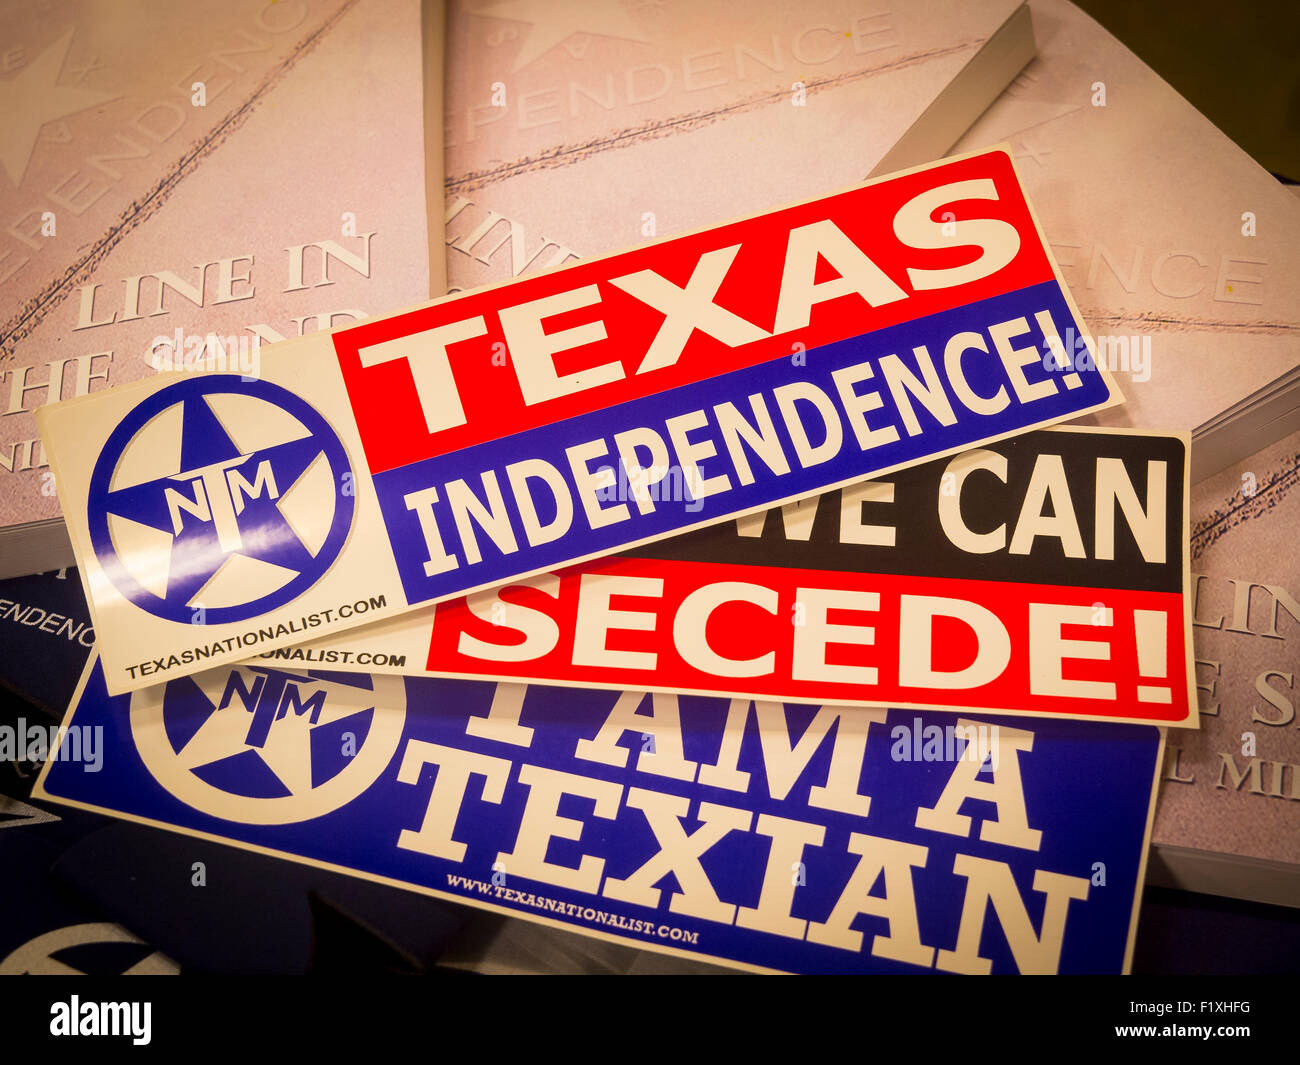 Excede aus den USA ist ein Recht, Texas, wenn es der Union beigetreten. Die Houston Nationalst Bewegung kämpft es auf das Ballett zu erhalten und lassen Sie Wähler entscheiden. Stockfoto